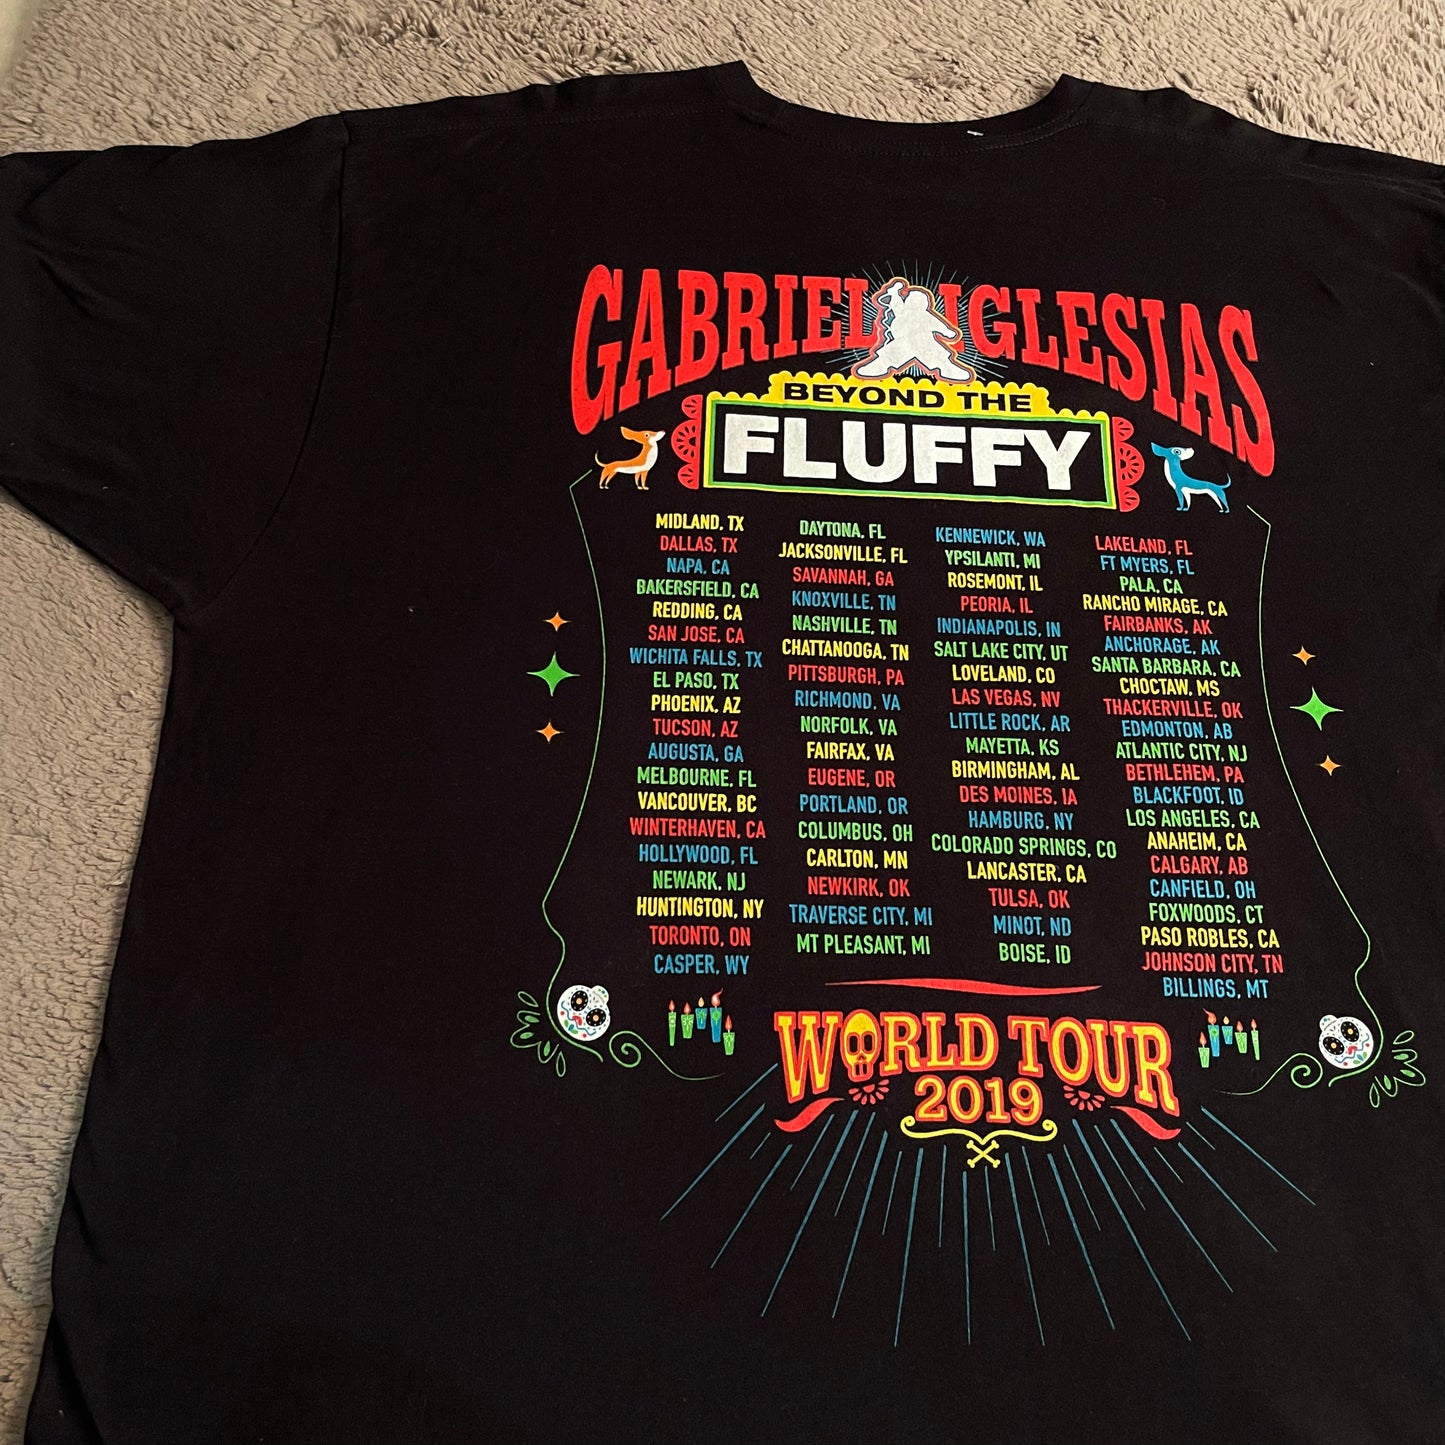 Gabriel "Fluffy" Iglesias: Beyond the Fluffy World Tour 2019 Shirt (2XL)